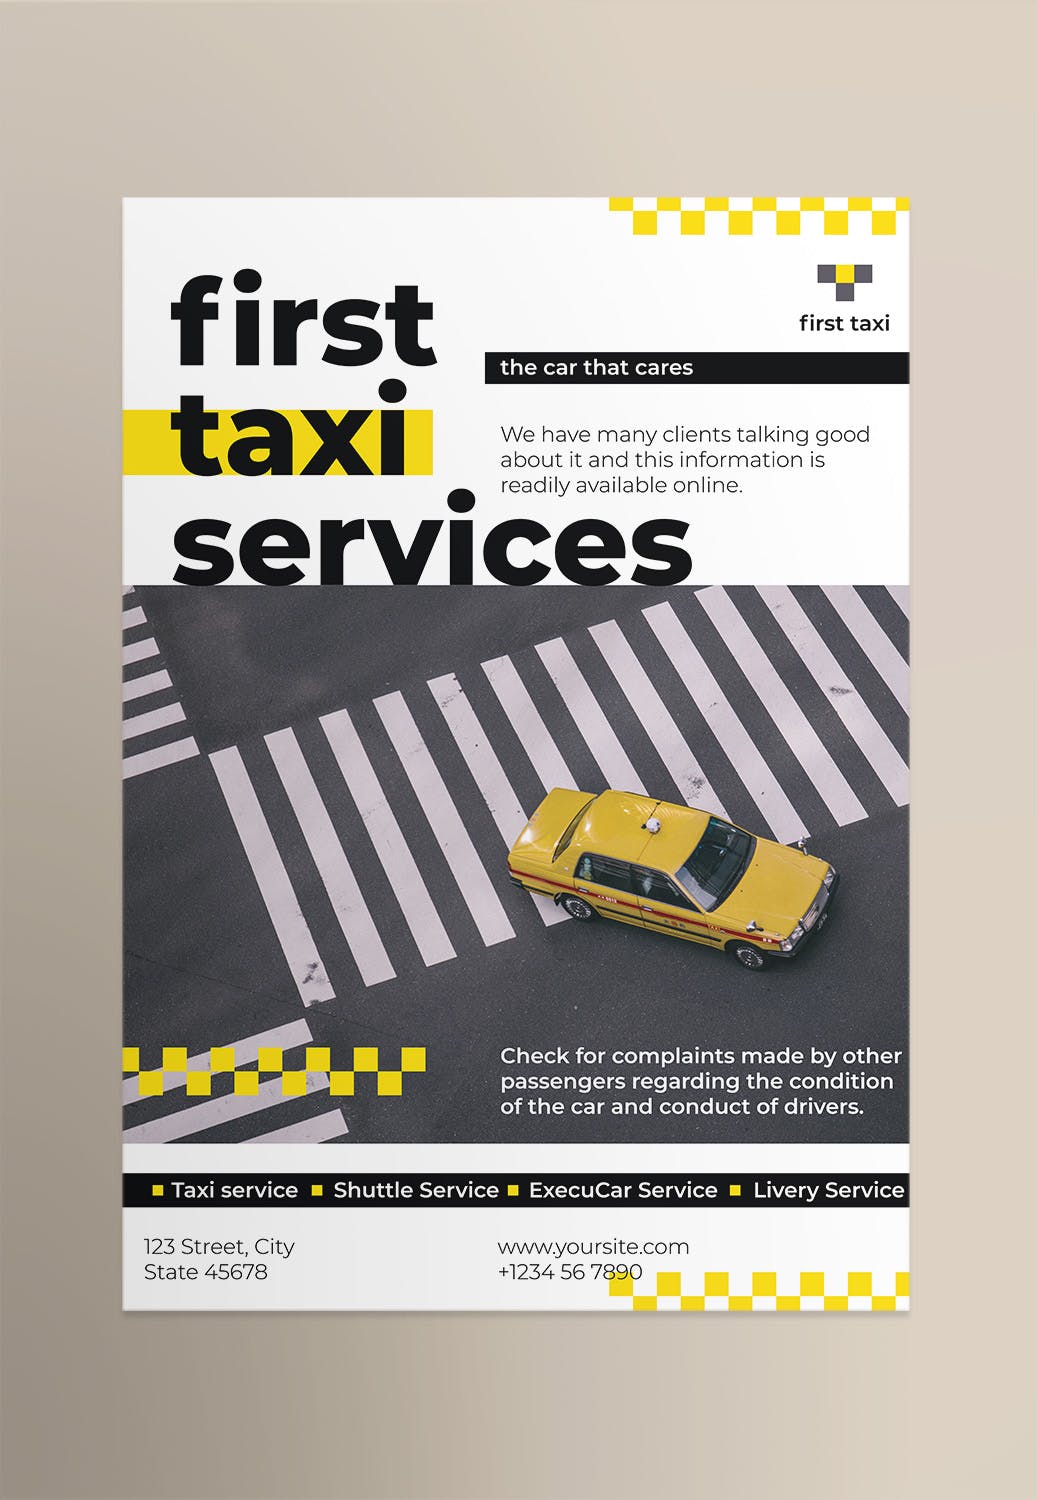 出租车/网约车公司宣传海报设计模板 Taxi Services Poster插图(1)